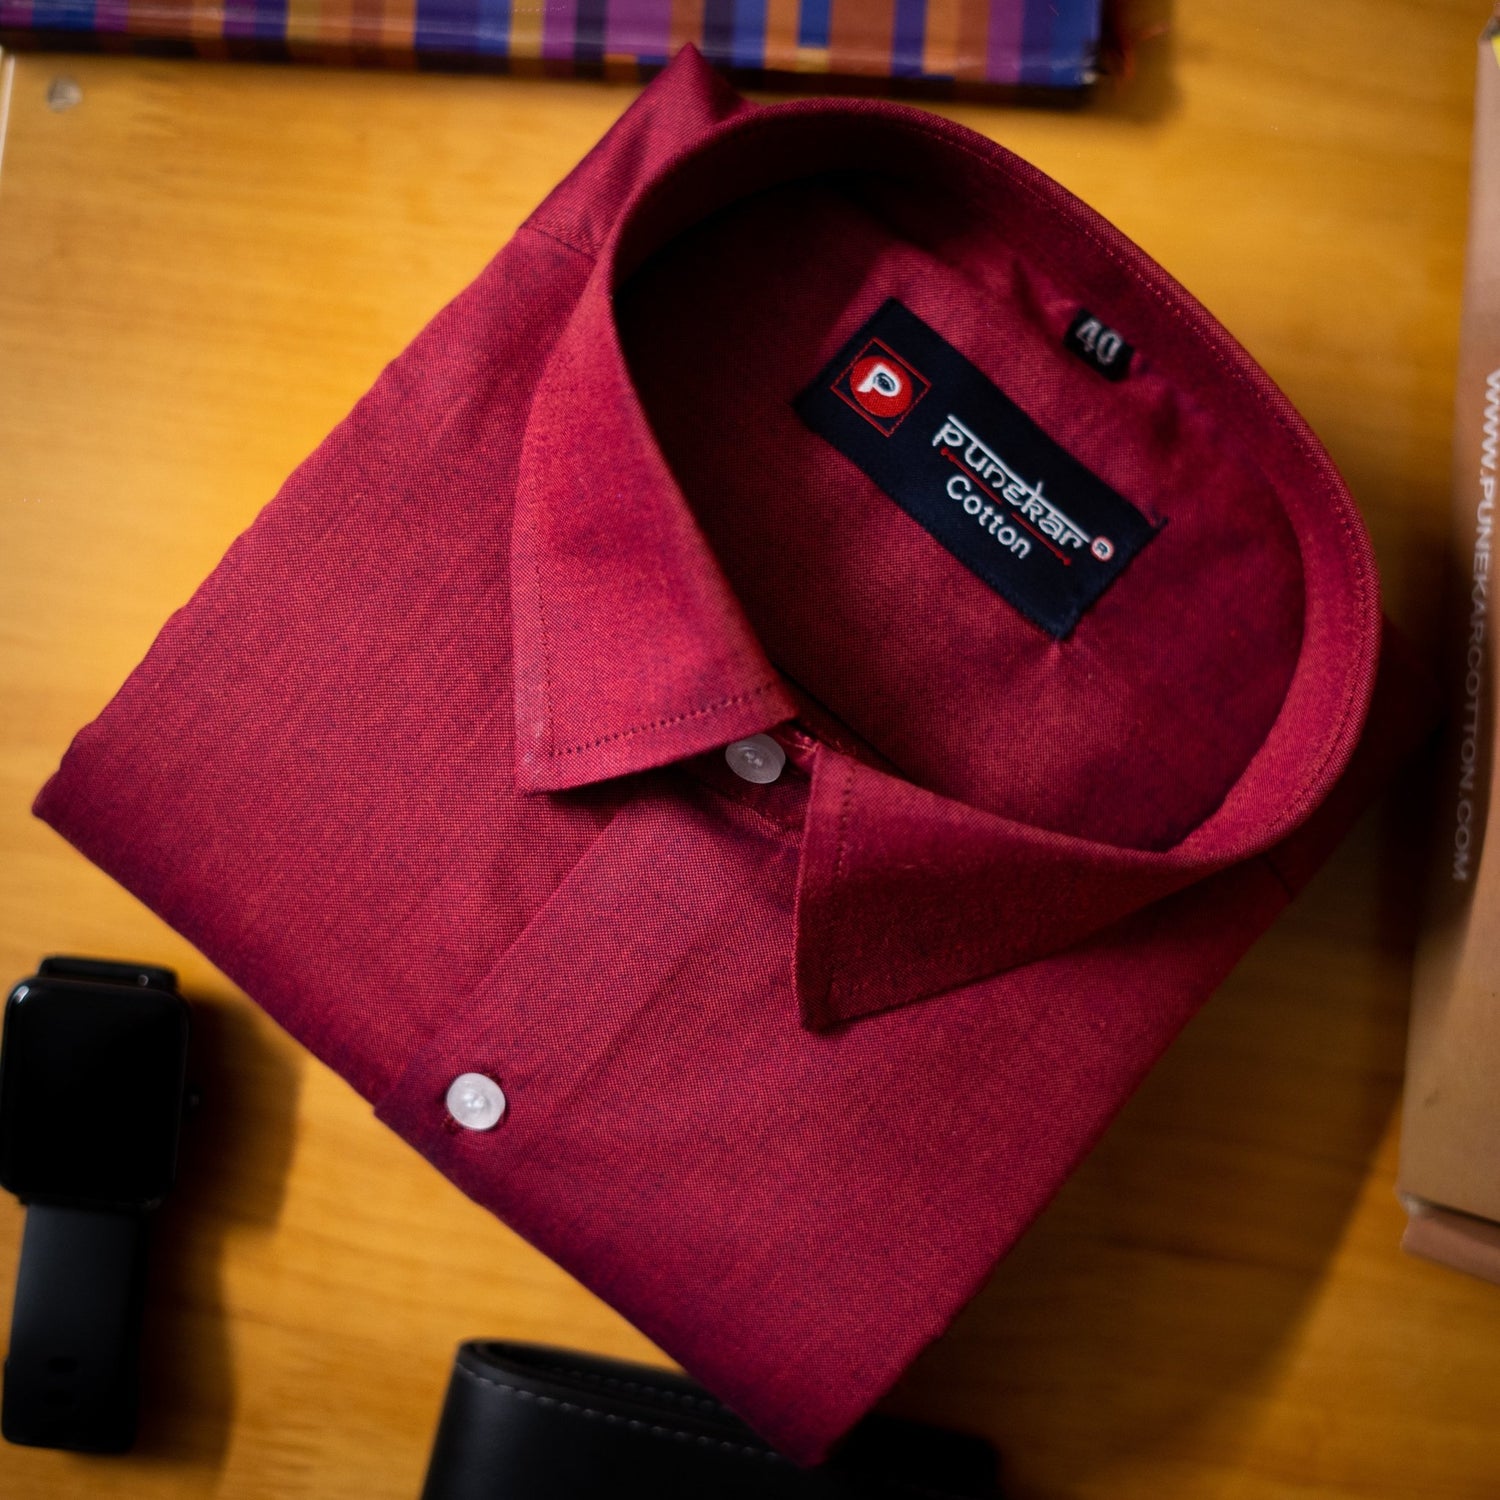 Maroon Color Satin Cotton Shirt For Men - Punekar Cotton